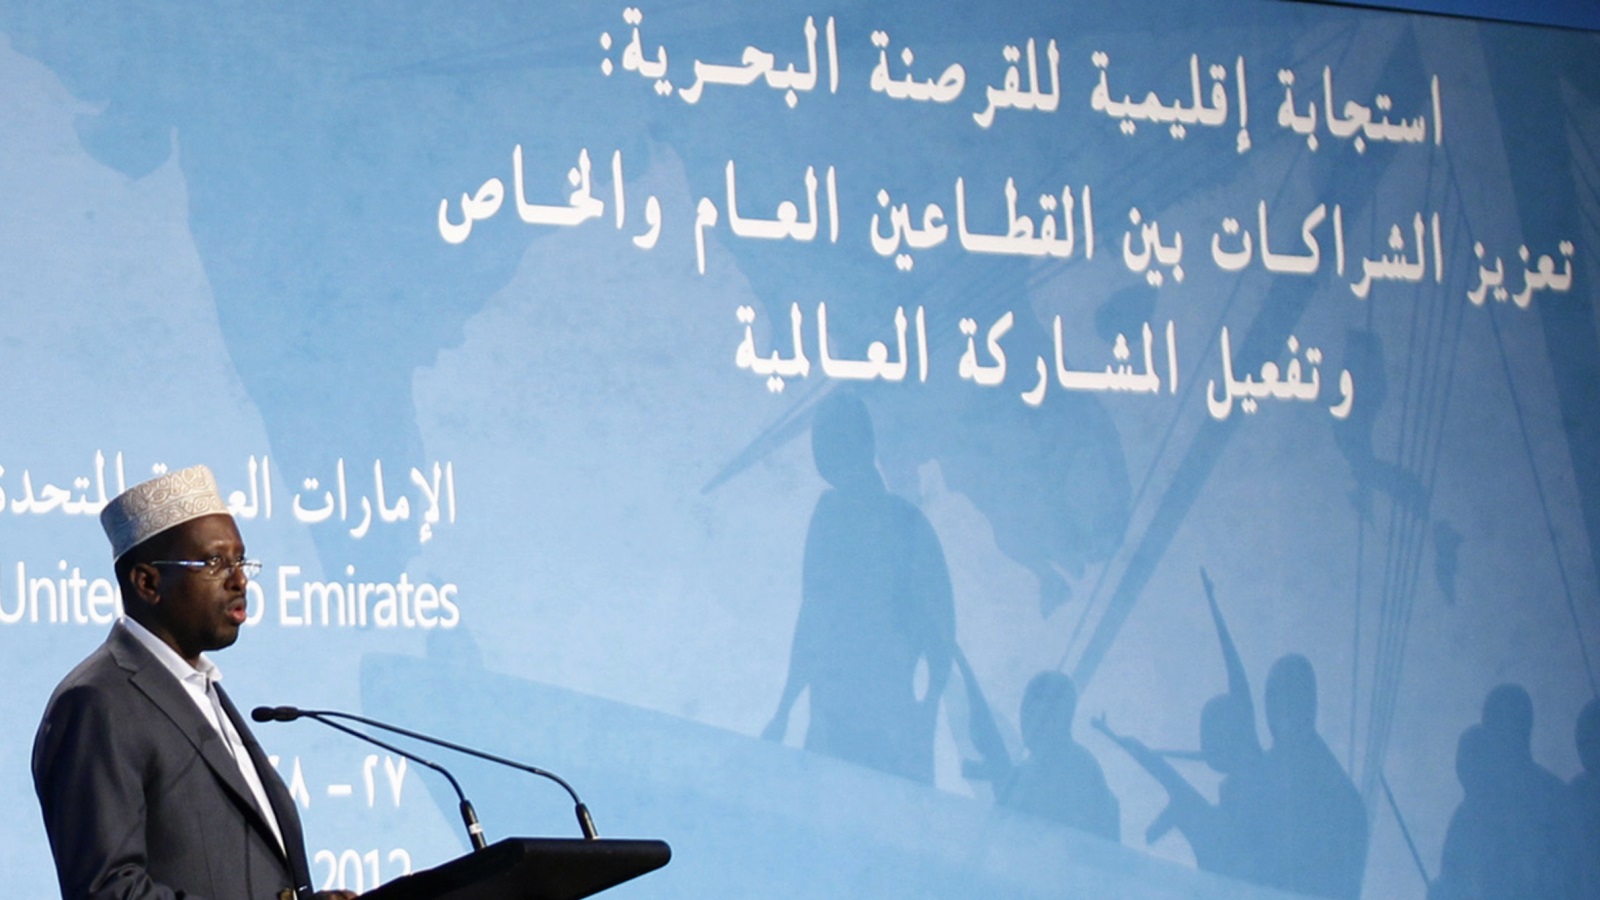 الرئيس الصومالي السابق في مؤتمر مكافحة القرصنة الذي أقيم في دبي عام 2012 (رويترز)